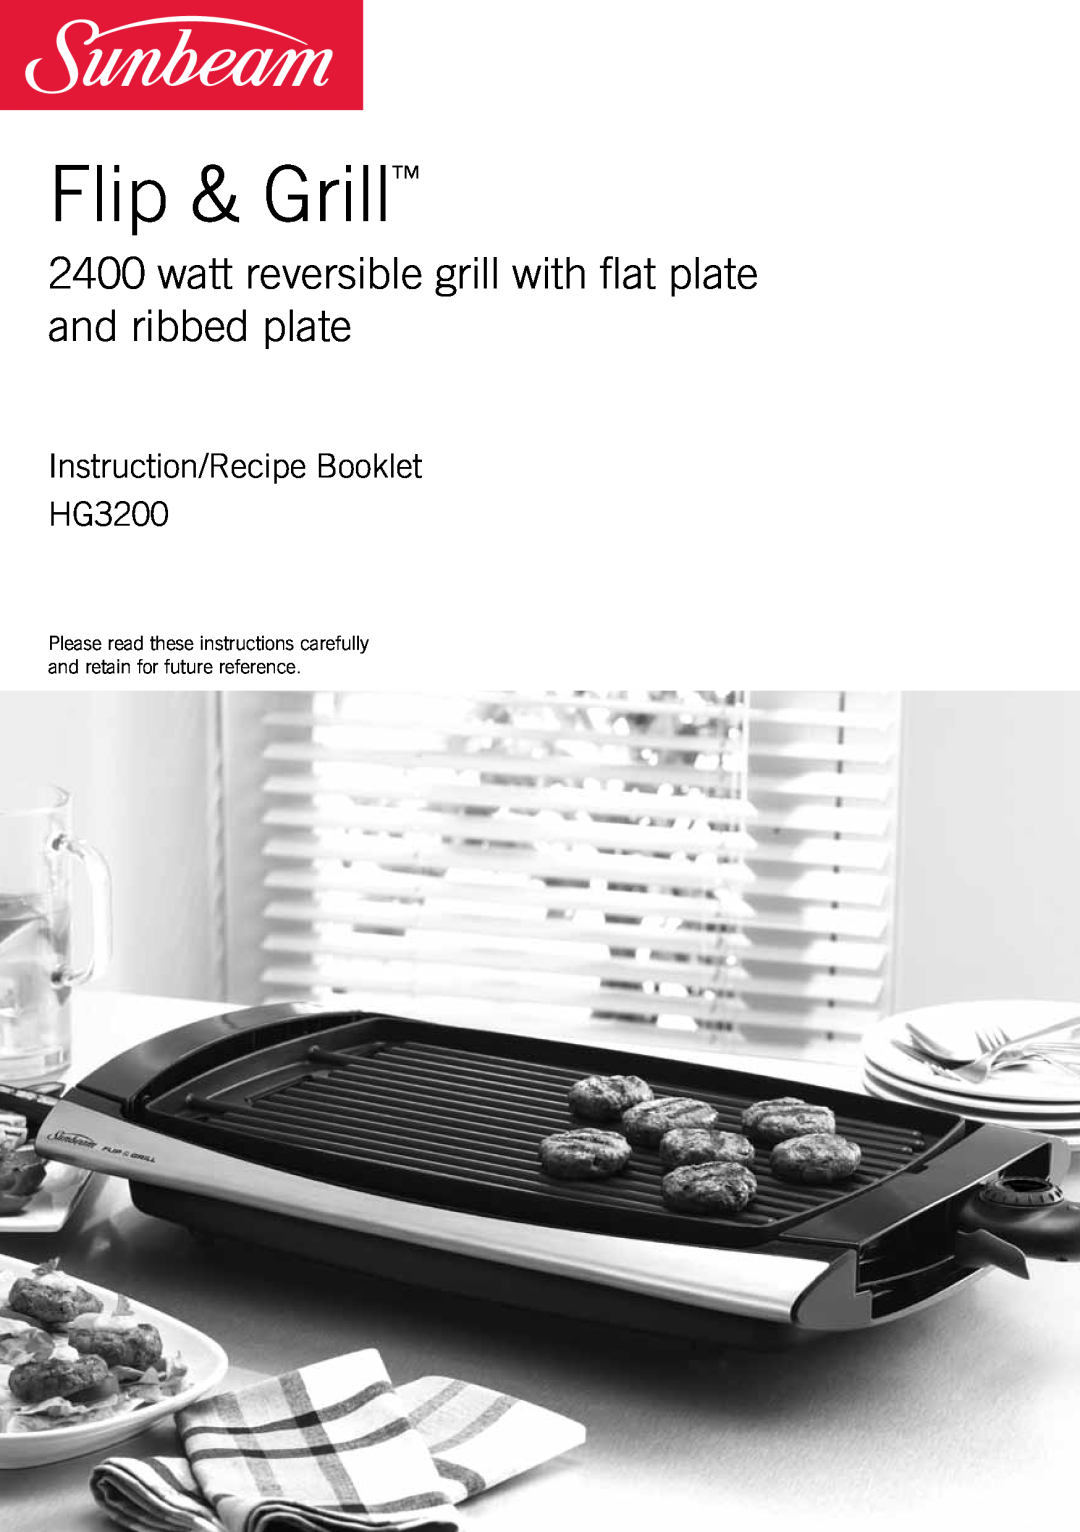 Sunbeam manual Flip & Grill, Instruction/Recipe Booklet HG3200 